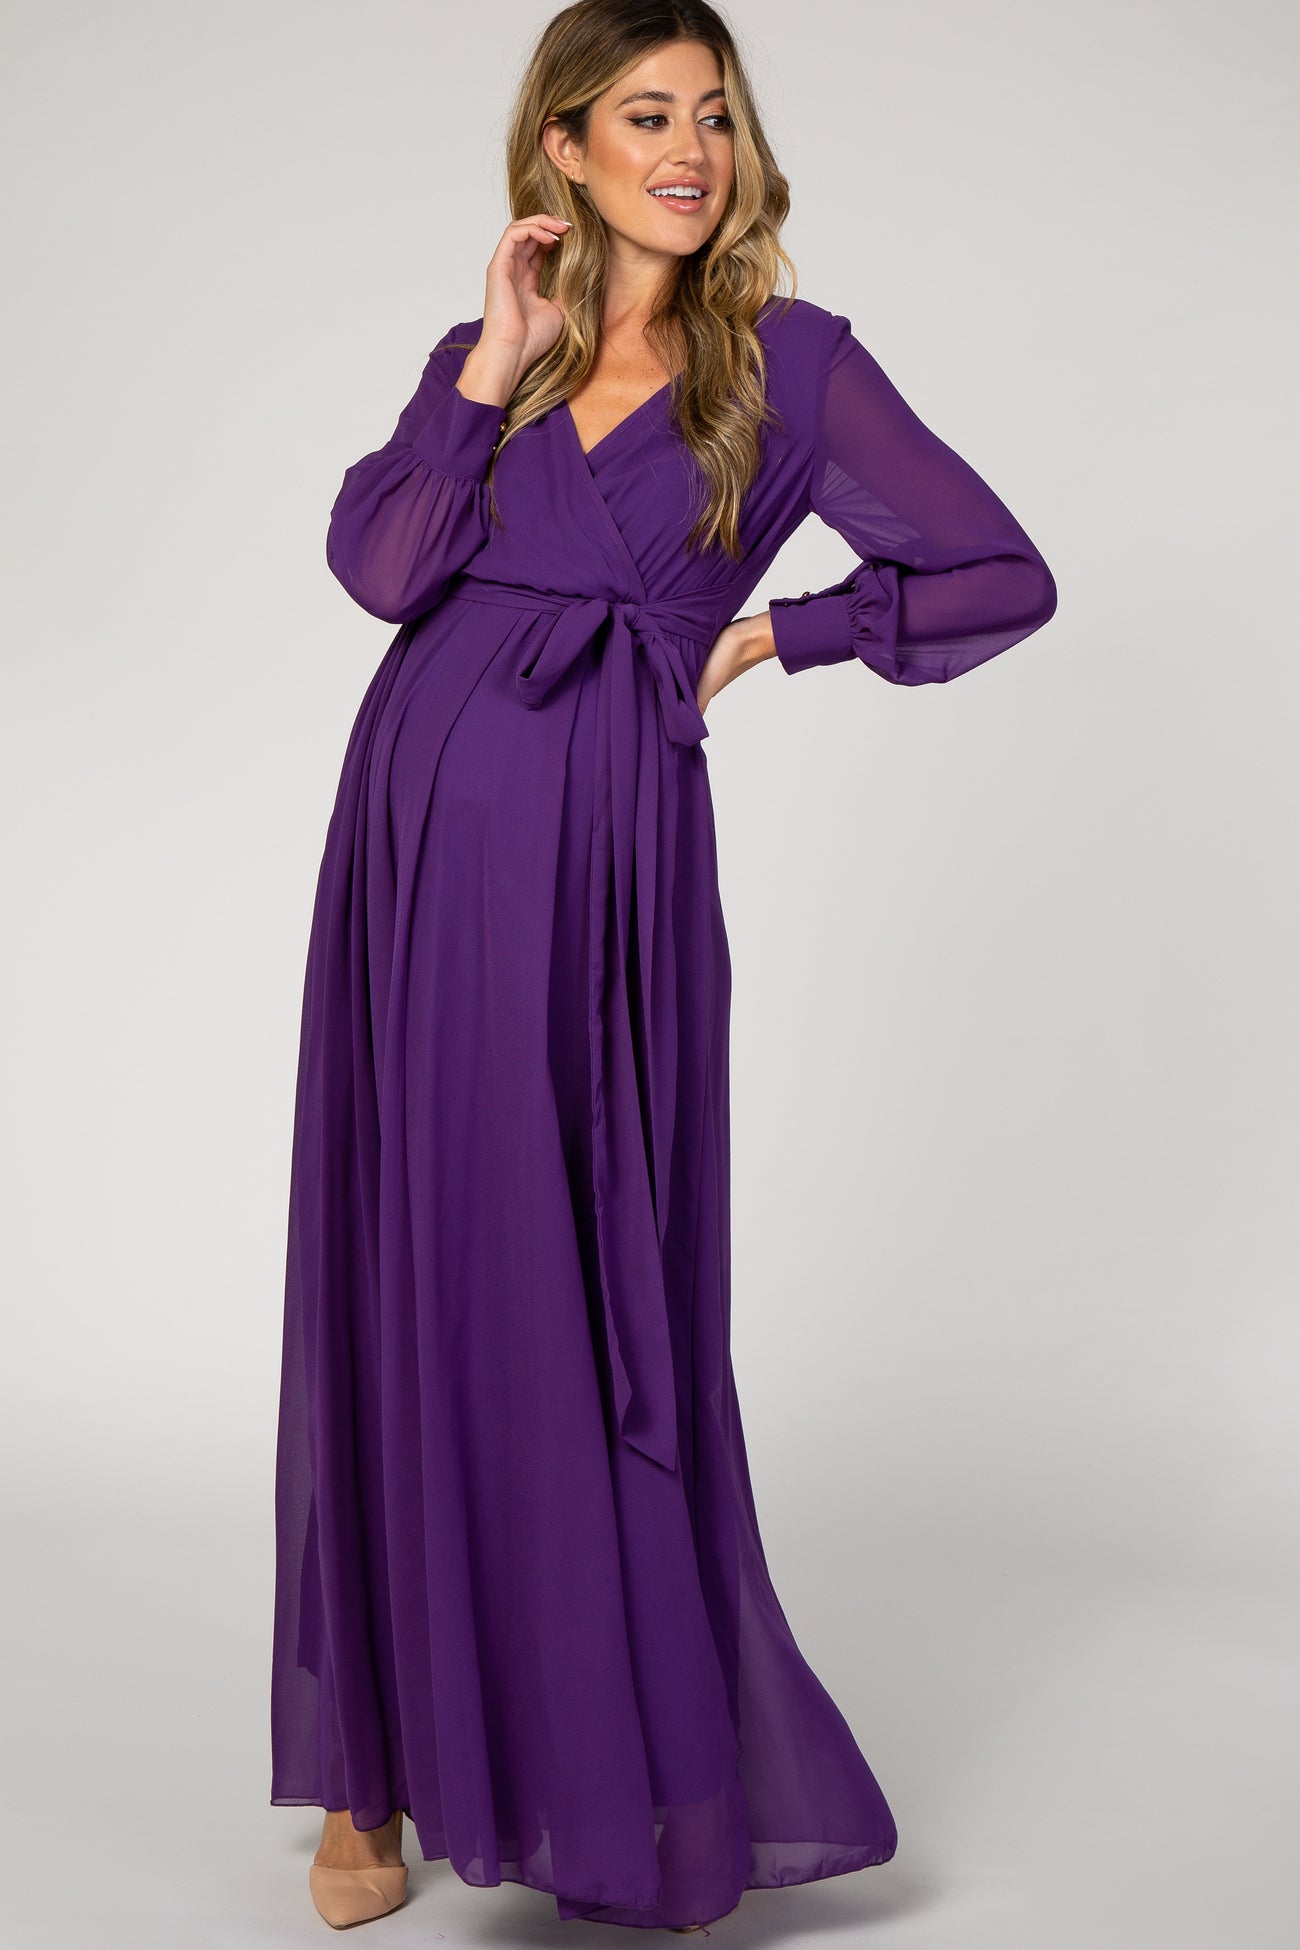 Purple Chiffon Long Sleeve Pleated Maternity Maxi Dress– PinkBlush